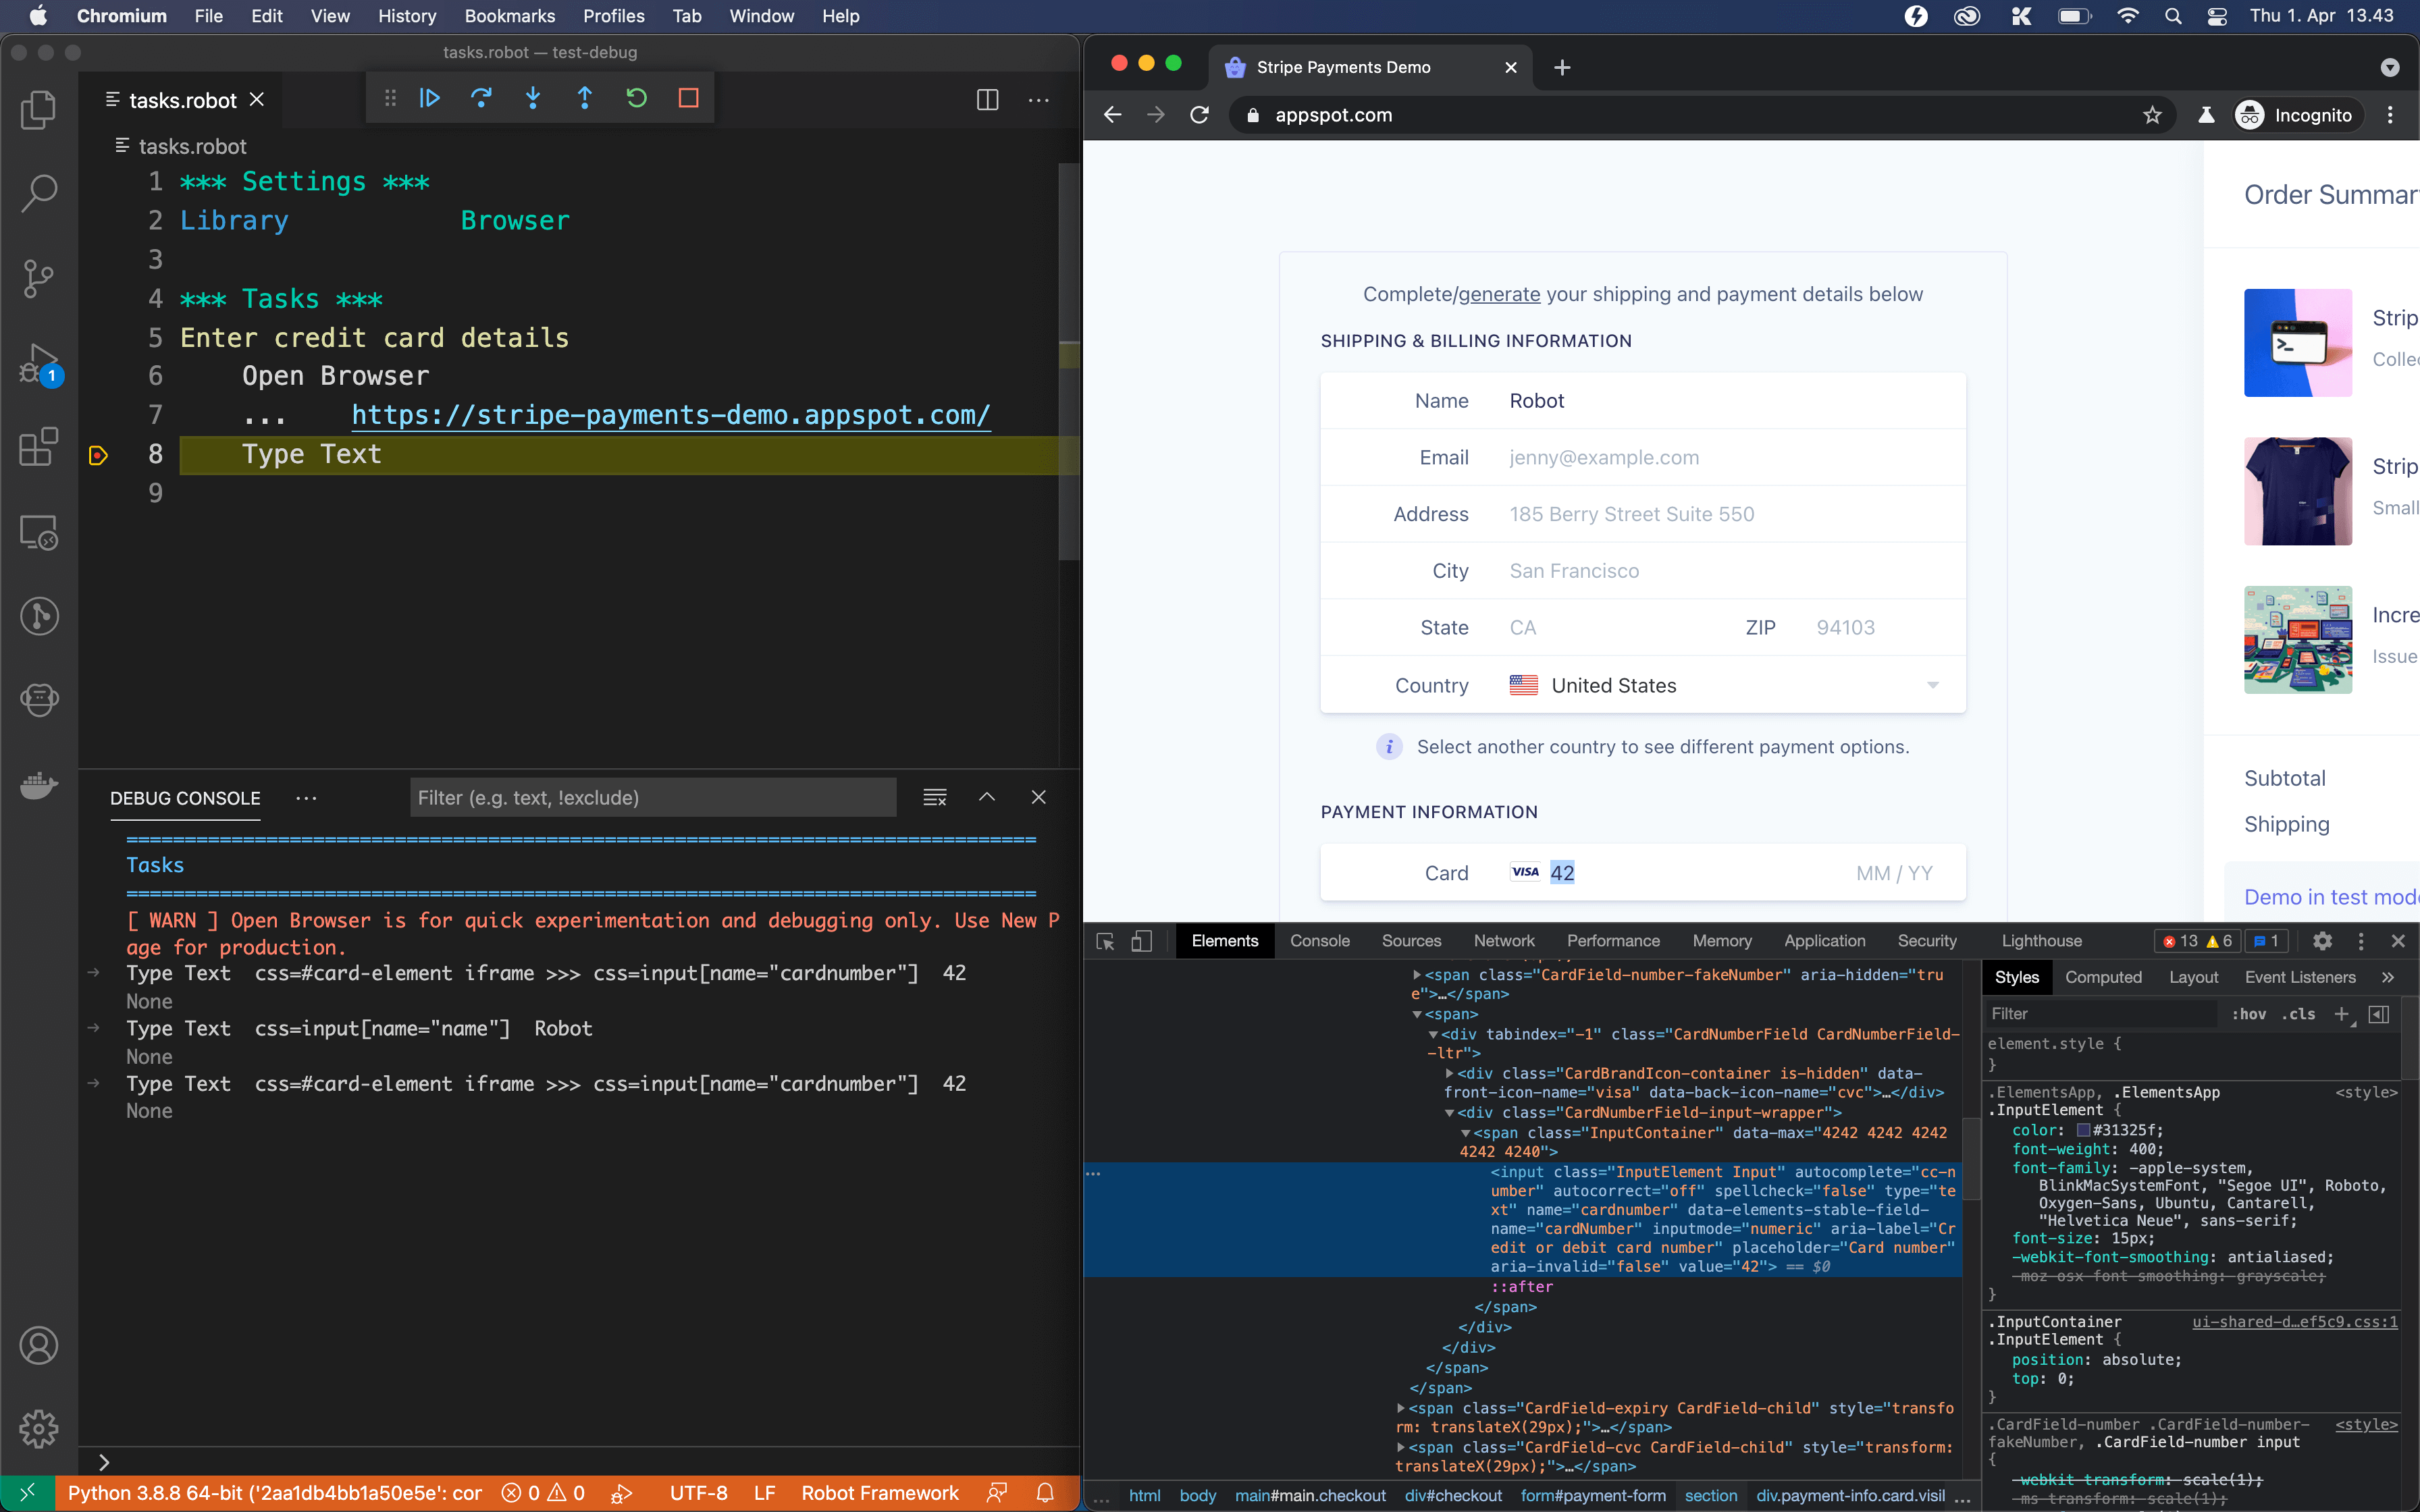 Visual Studio Code debug session